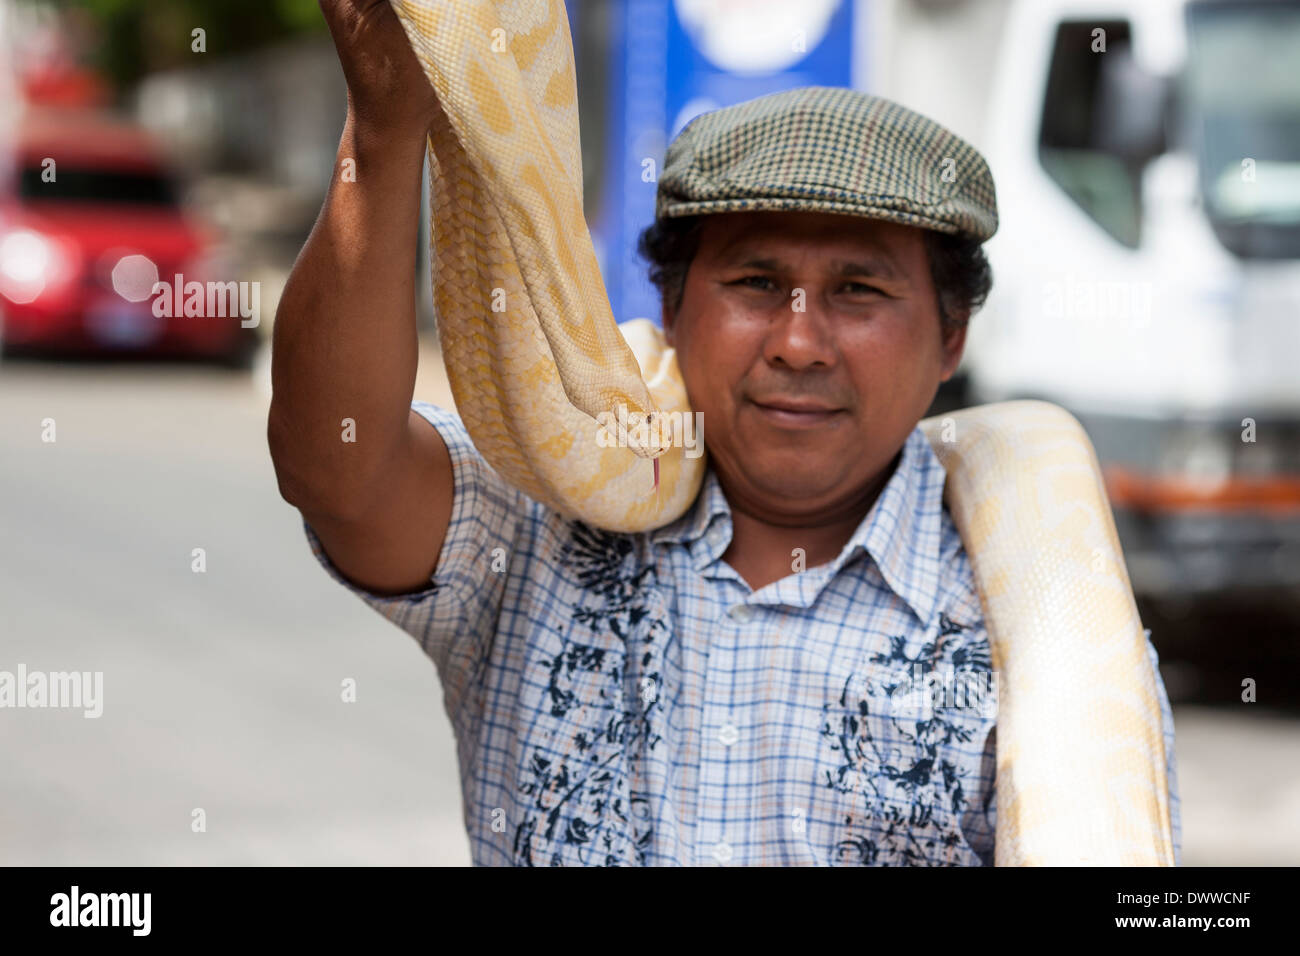 Un homme s'occupe d'un birman jaune durant le week-end juste dans les rues au cours de Juayua sur les routes de la flores en El Salvador Banque D'Images